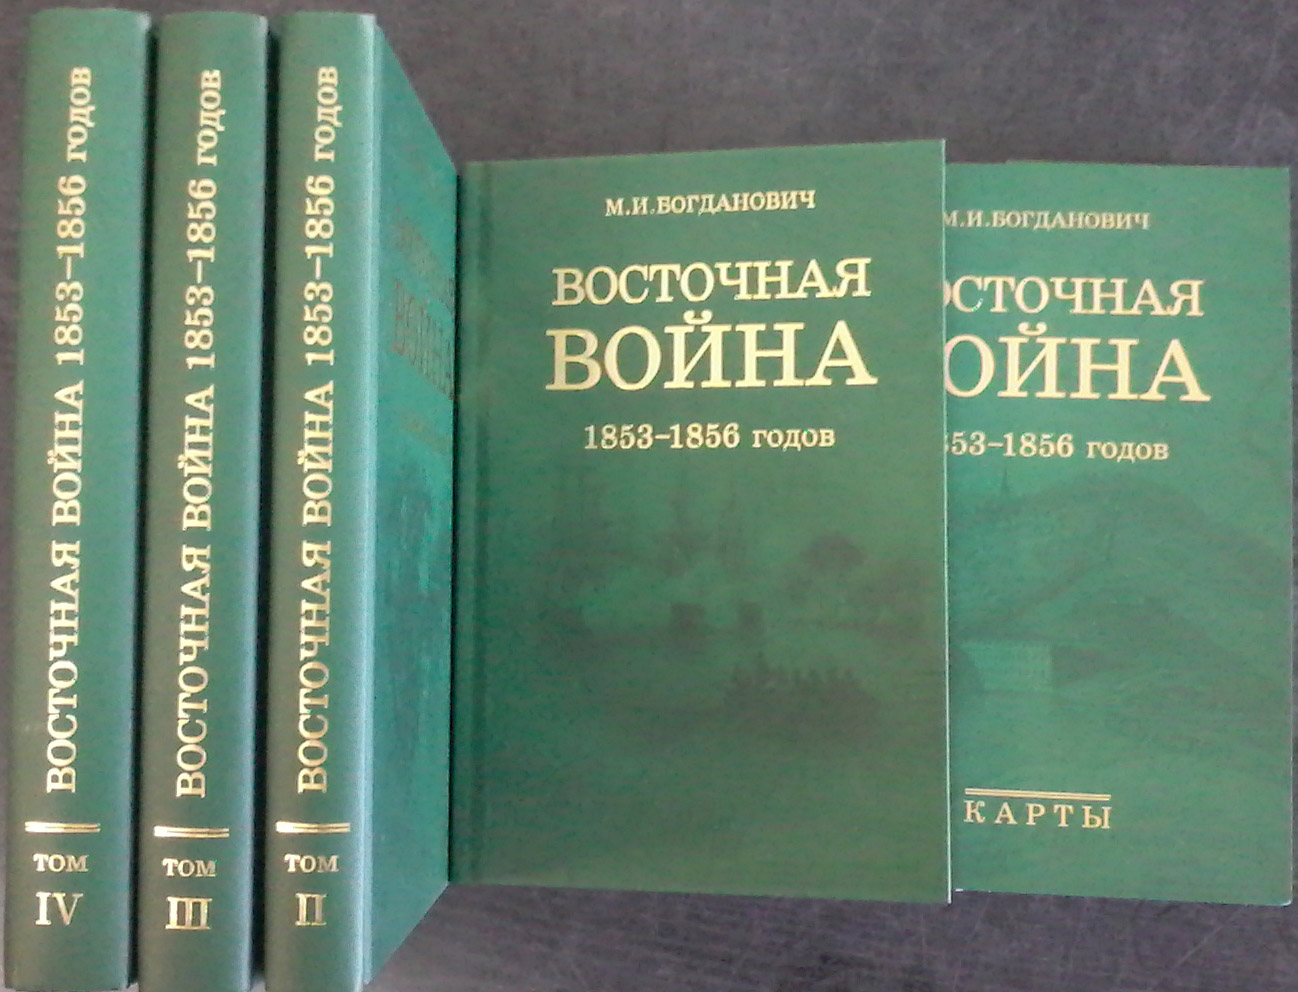 Восточная война 1853-1856 годов. В 4 томах+карты